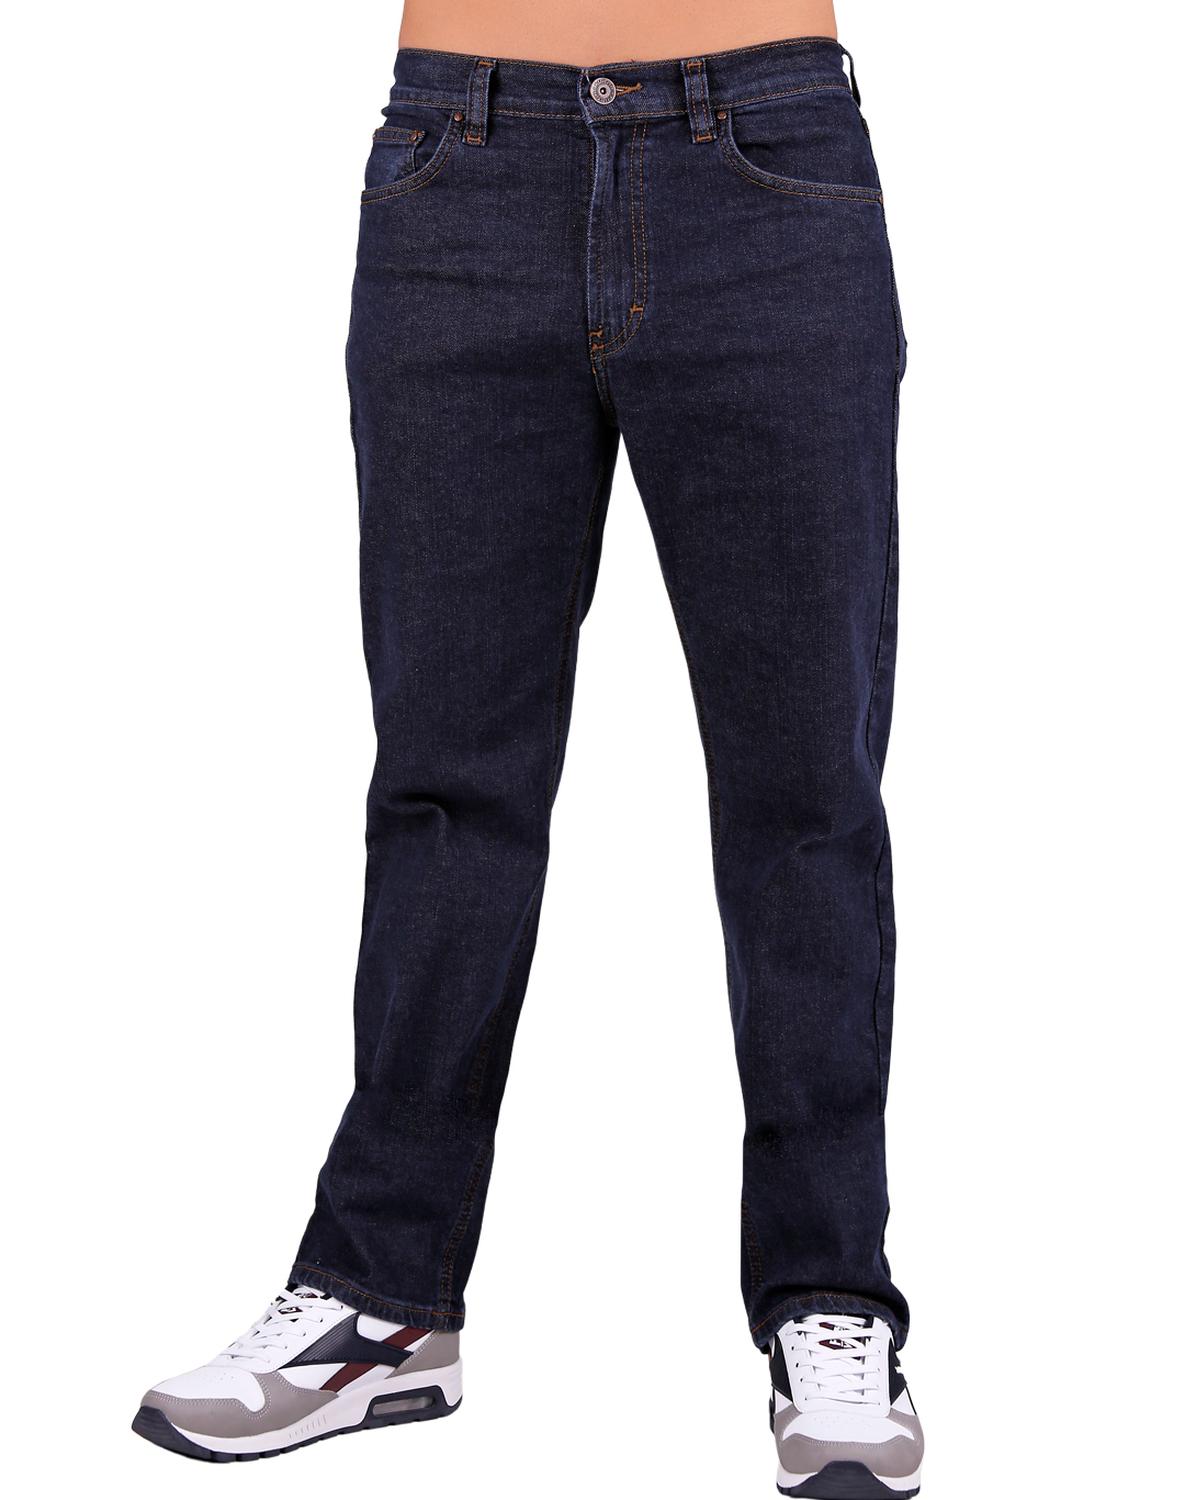 Jeans Básico Hombre Furor Azul 62106018 Marshall Mezclilla-Comfort